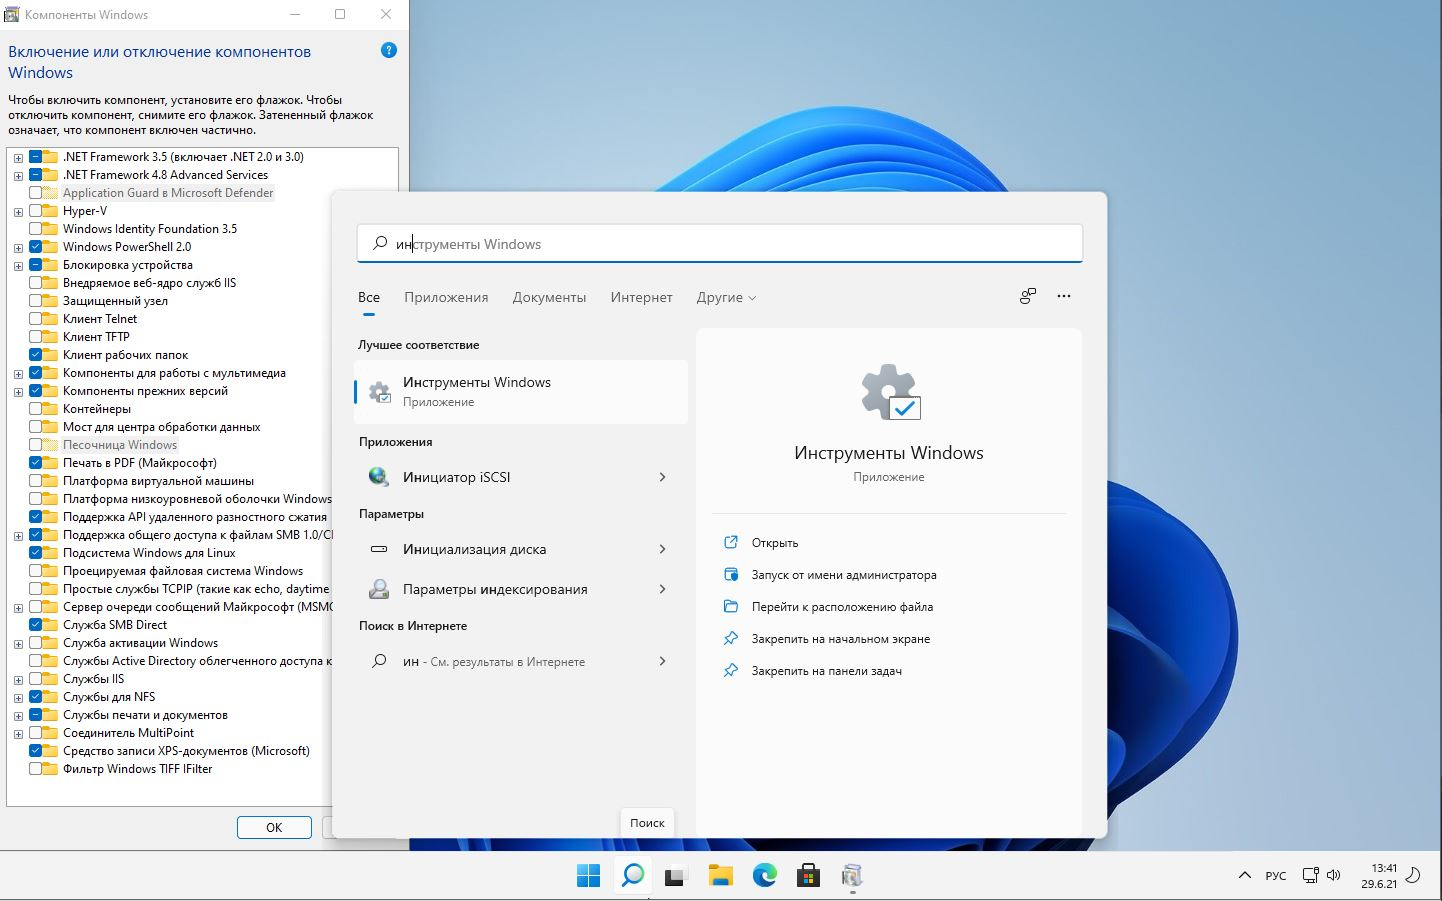 Windows 11 Pro 10.0.22000.51 co_Release 2x1 by Lopatkin x64 2021 Rus